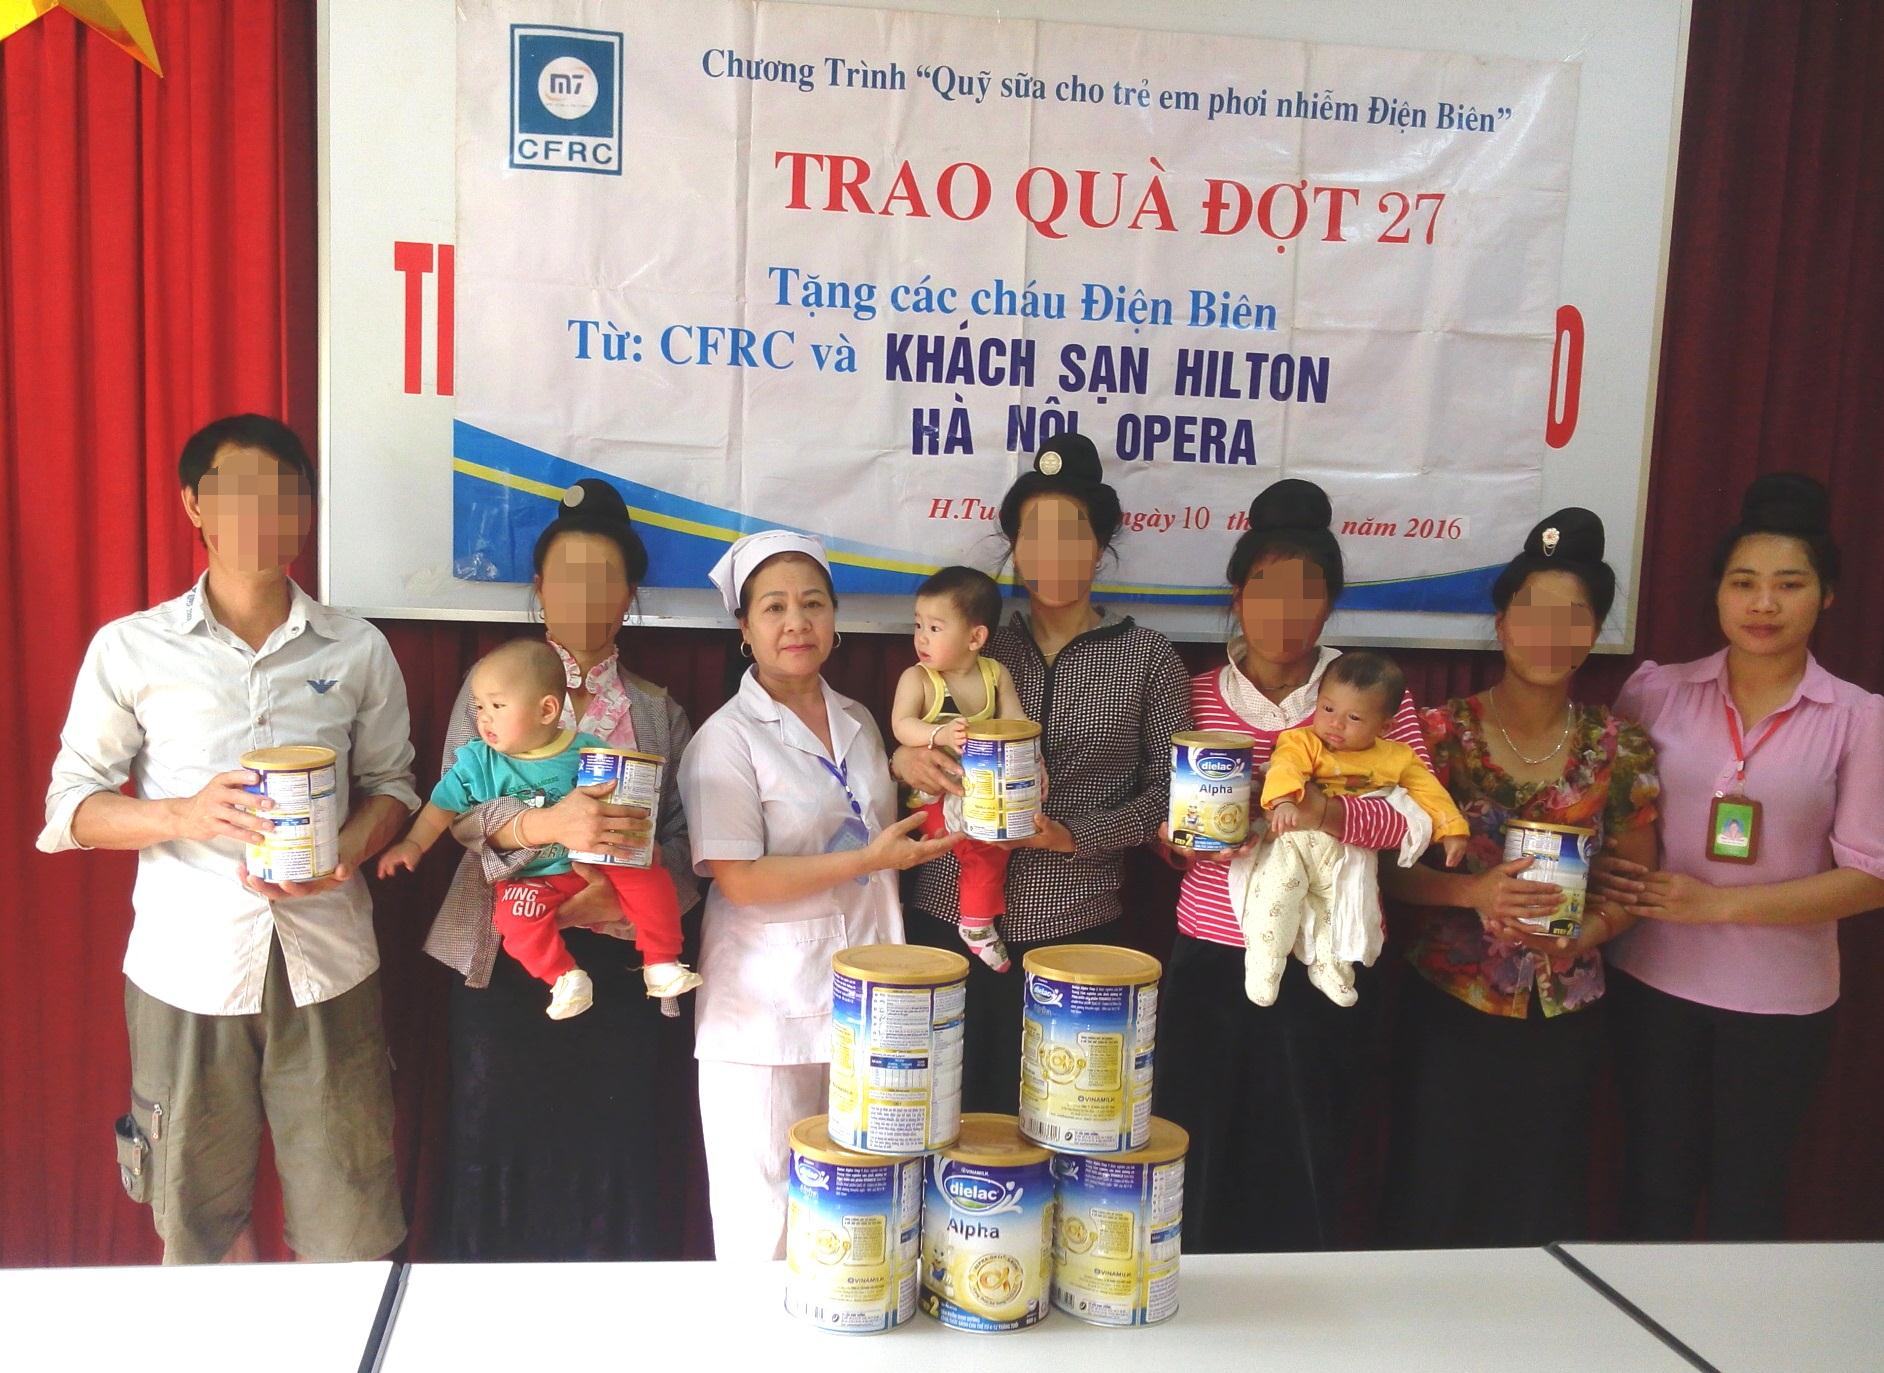 Quỹ sữa cho trẻ em phơi nhiễm HIV tại Tuần Giáo tròn 30 tháng